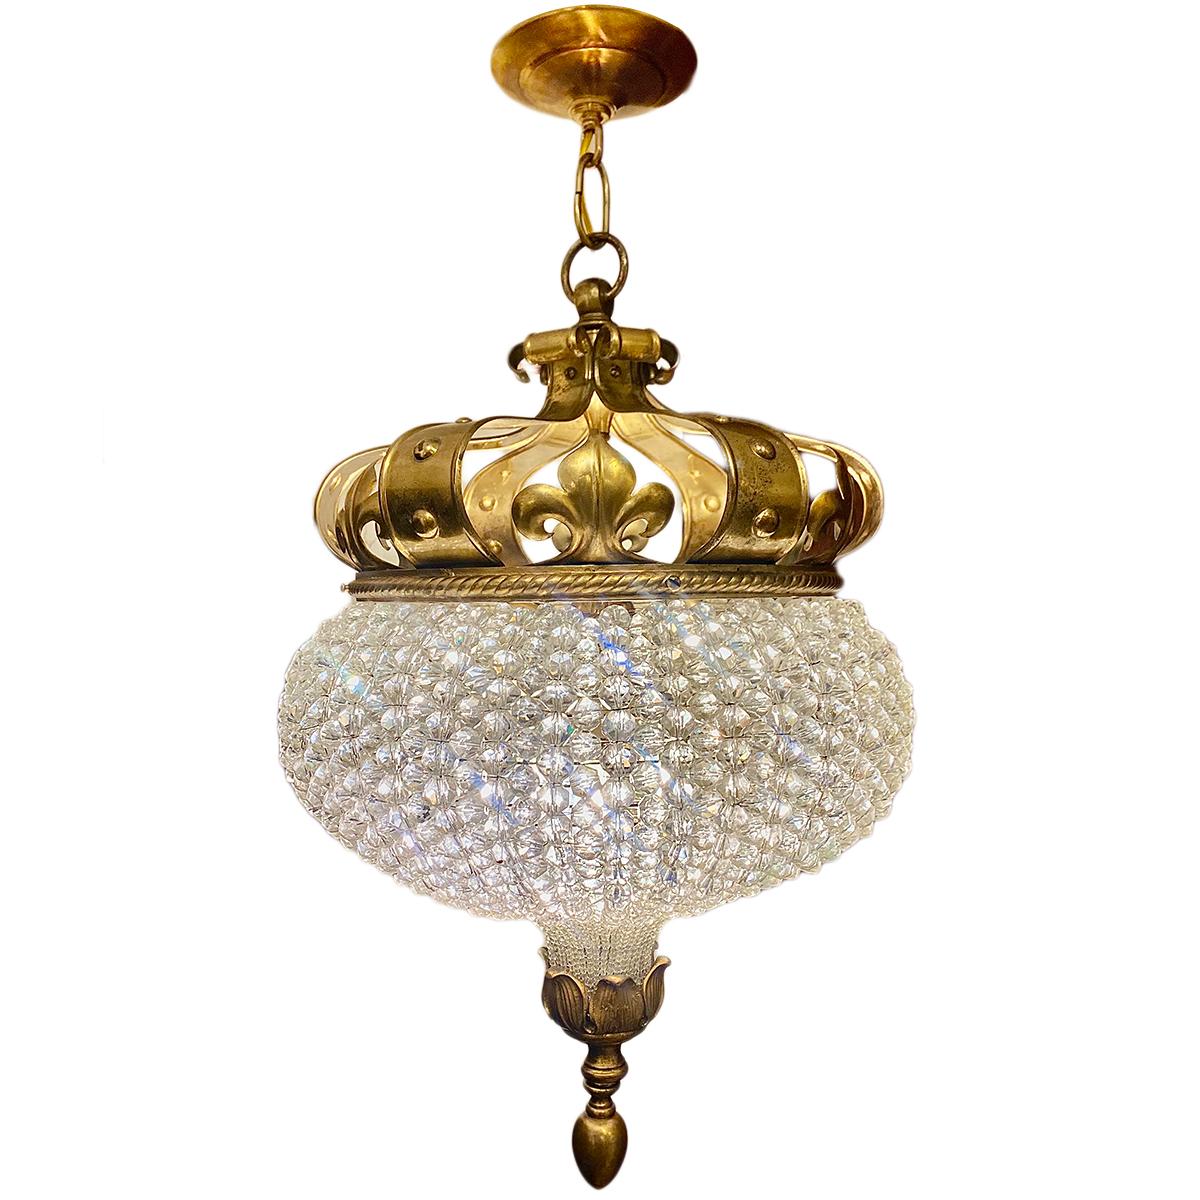 Lanterne française en bronze doré et cristal vers 1900.

Mesures :
Diamètre : 16.5